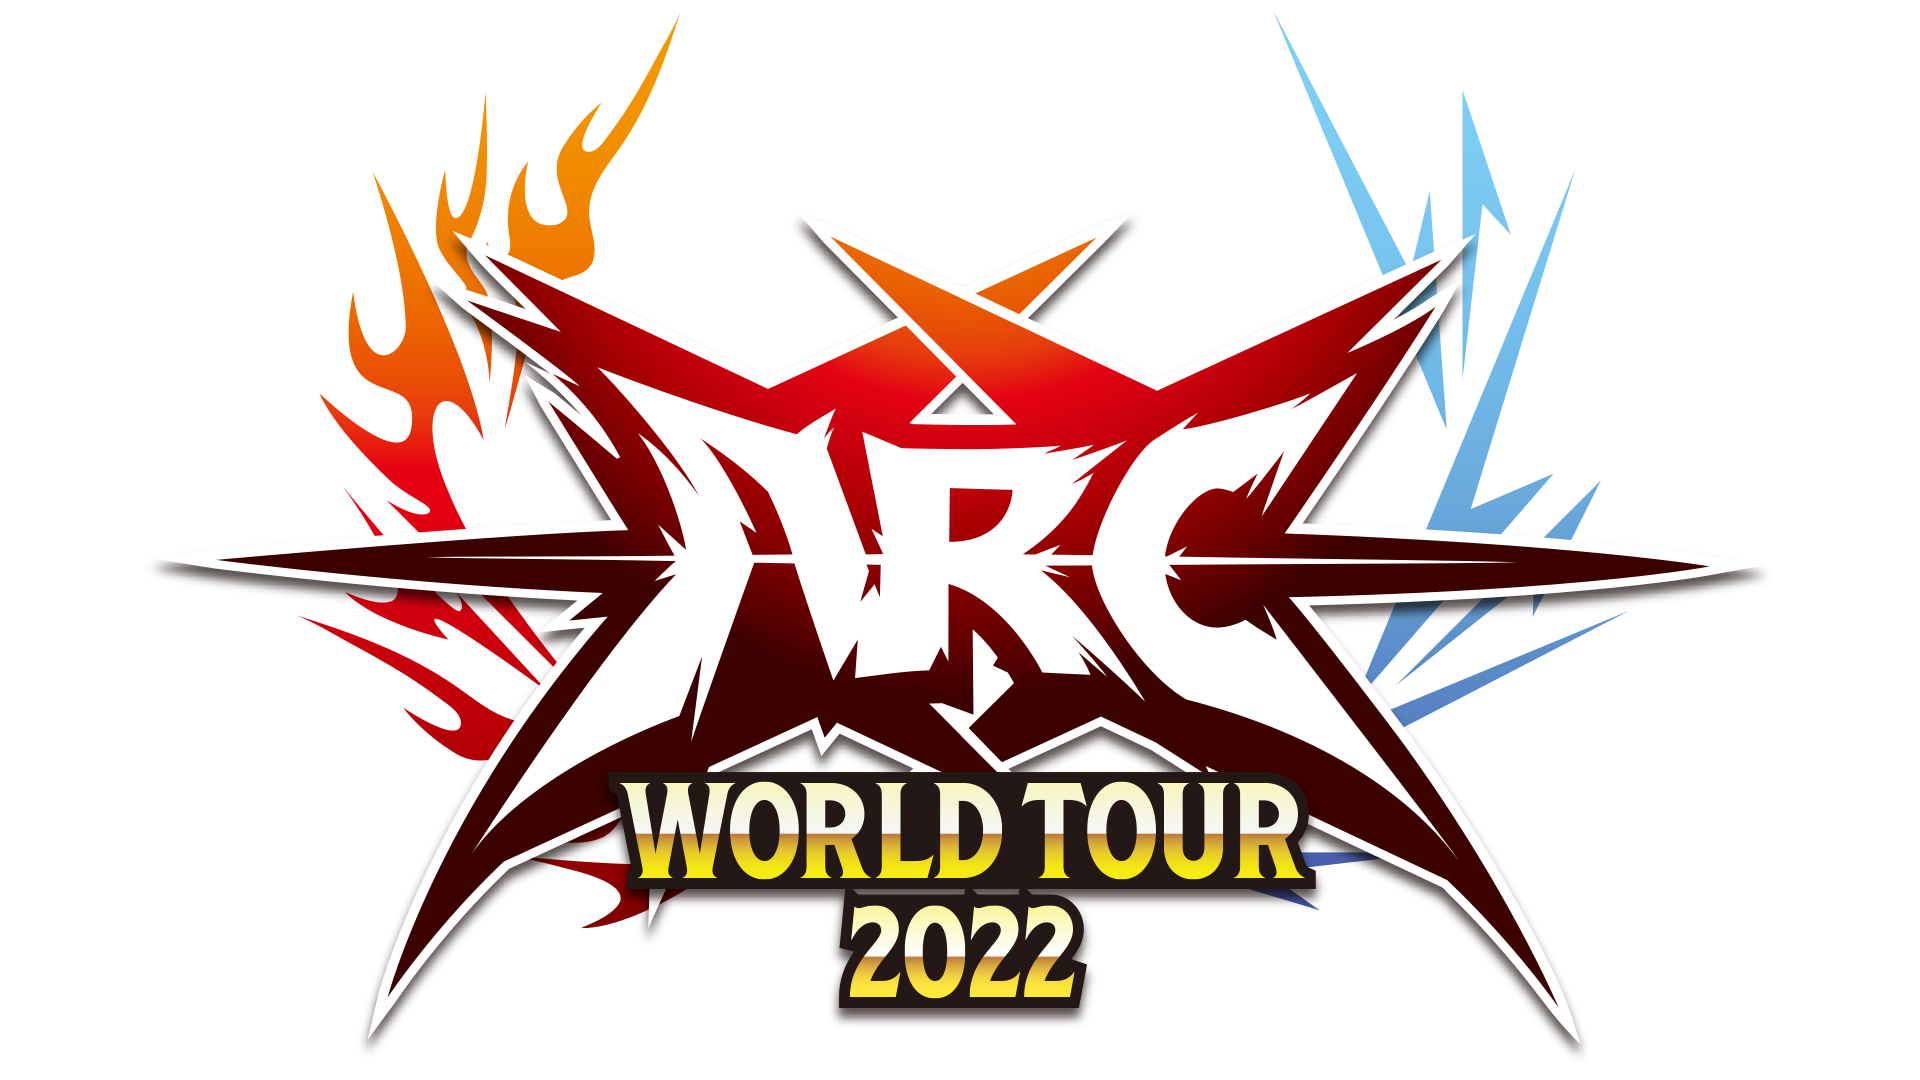 ARC WORLD TOUR 2022 Website is live!